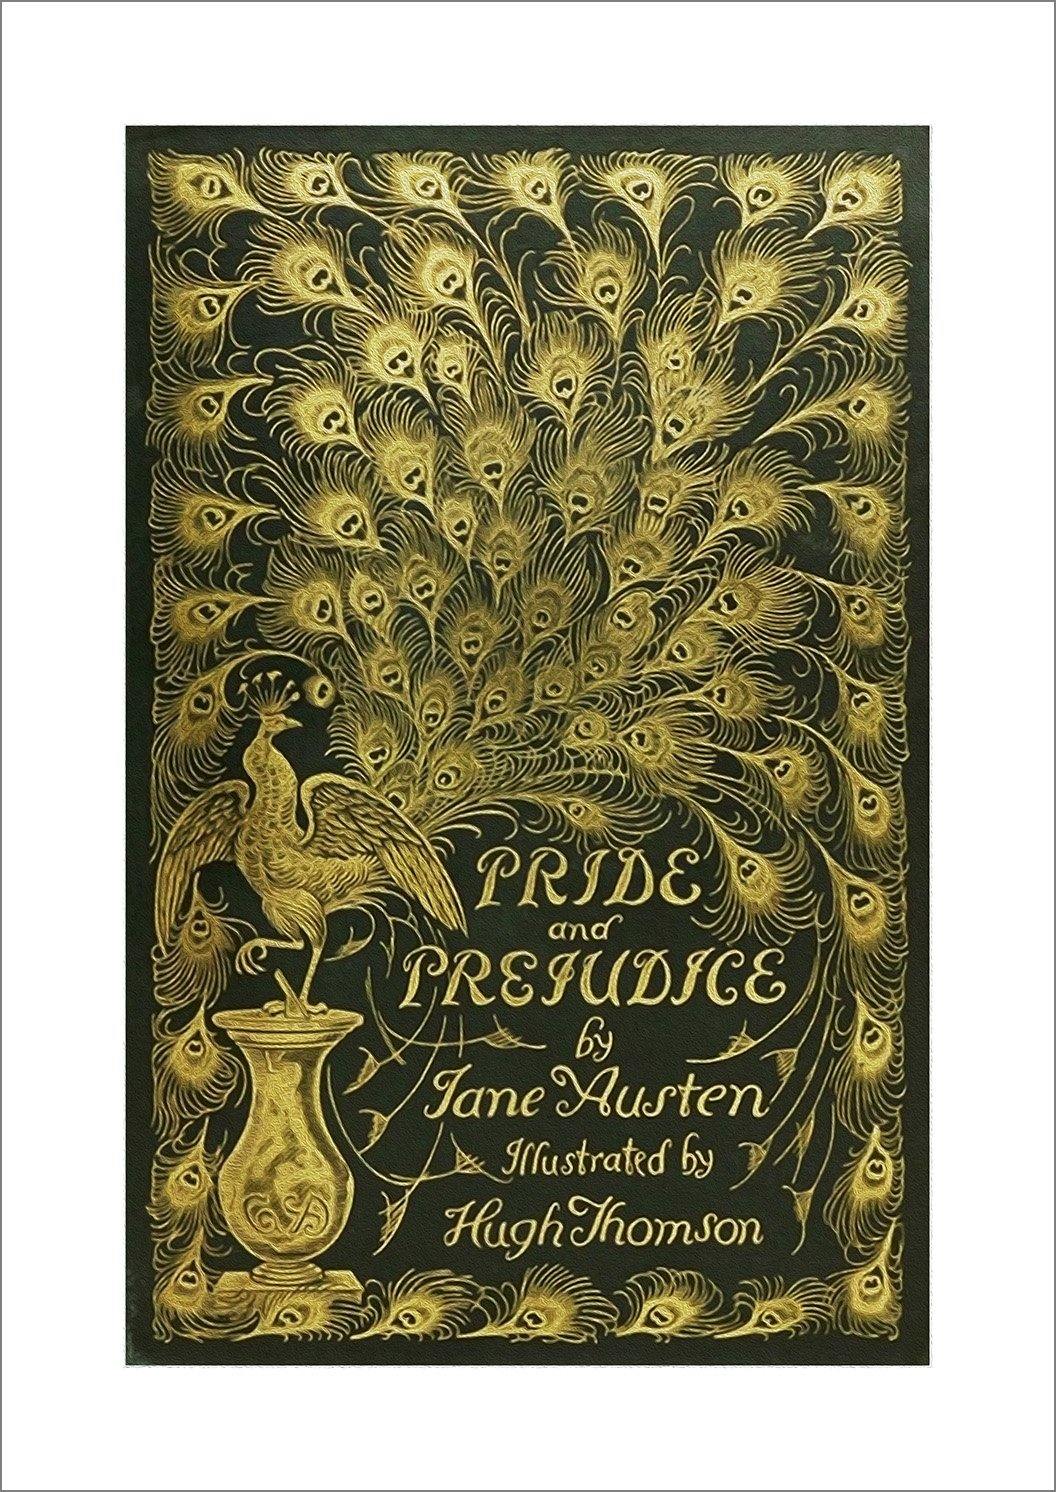 PRIDE AND PREJUDICE POSTER: Vintage Book Cover Art Print - Pimlico Prints